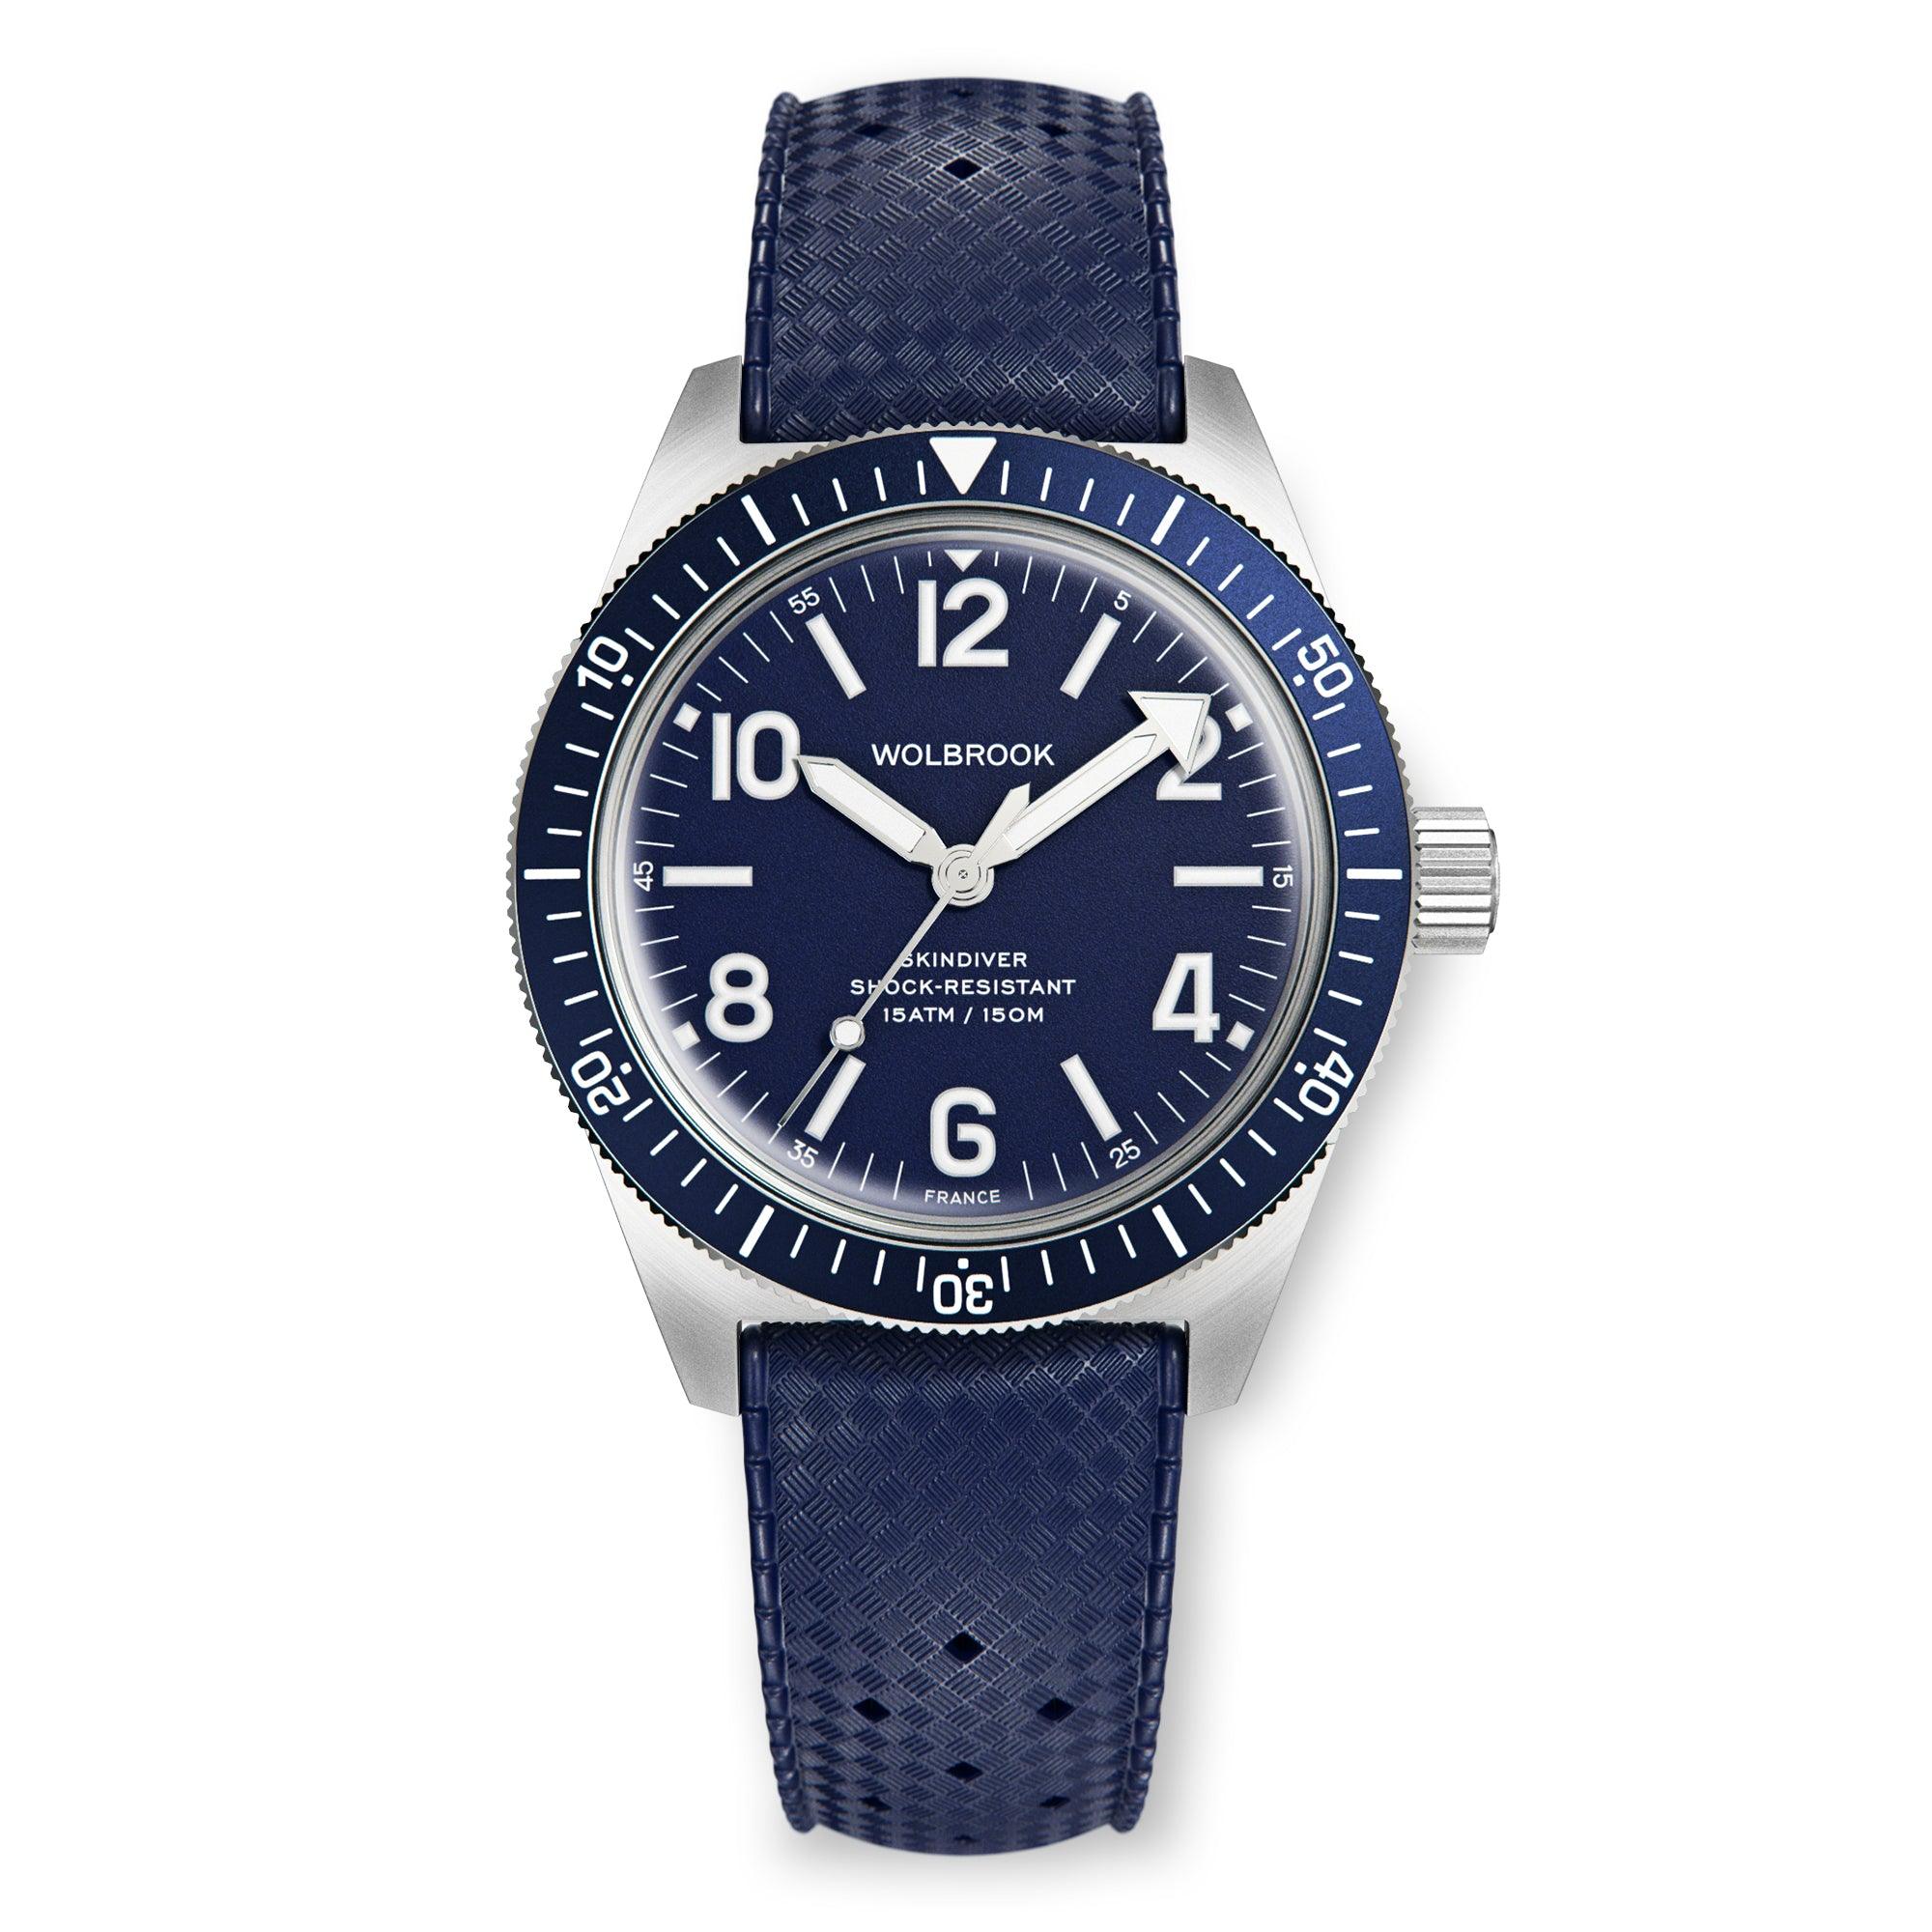 Blue Leather ZEALANDE® Watch Rolls